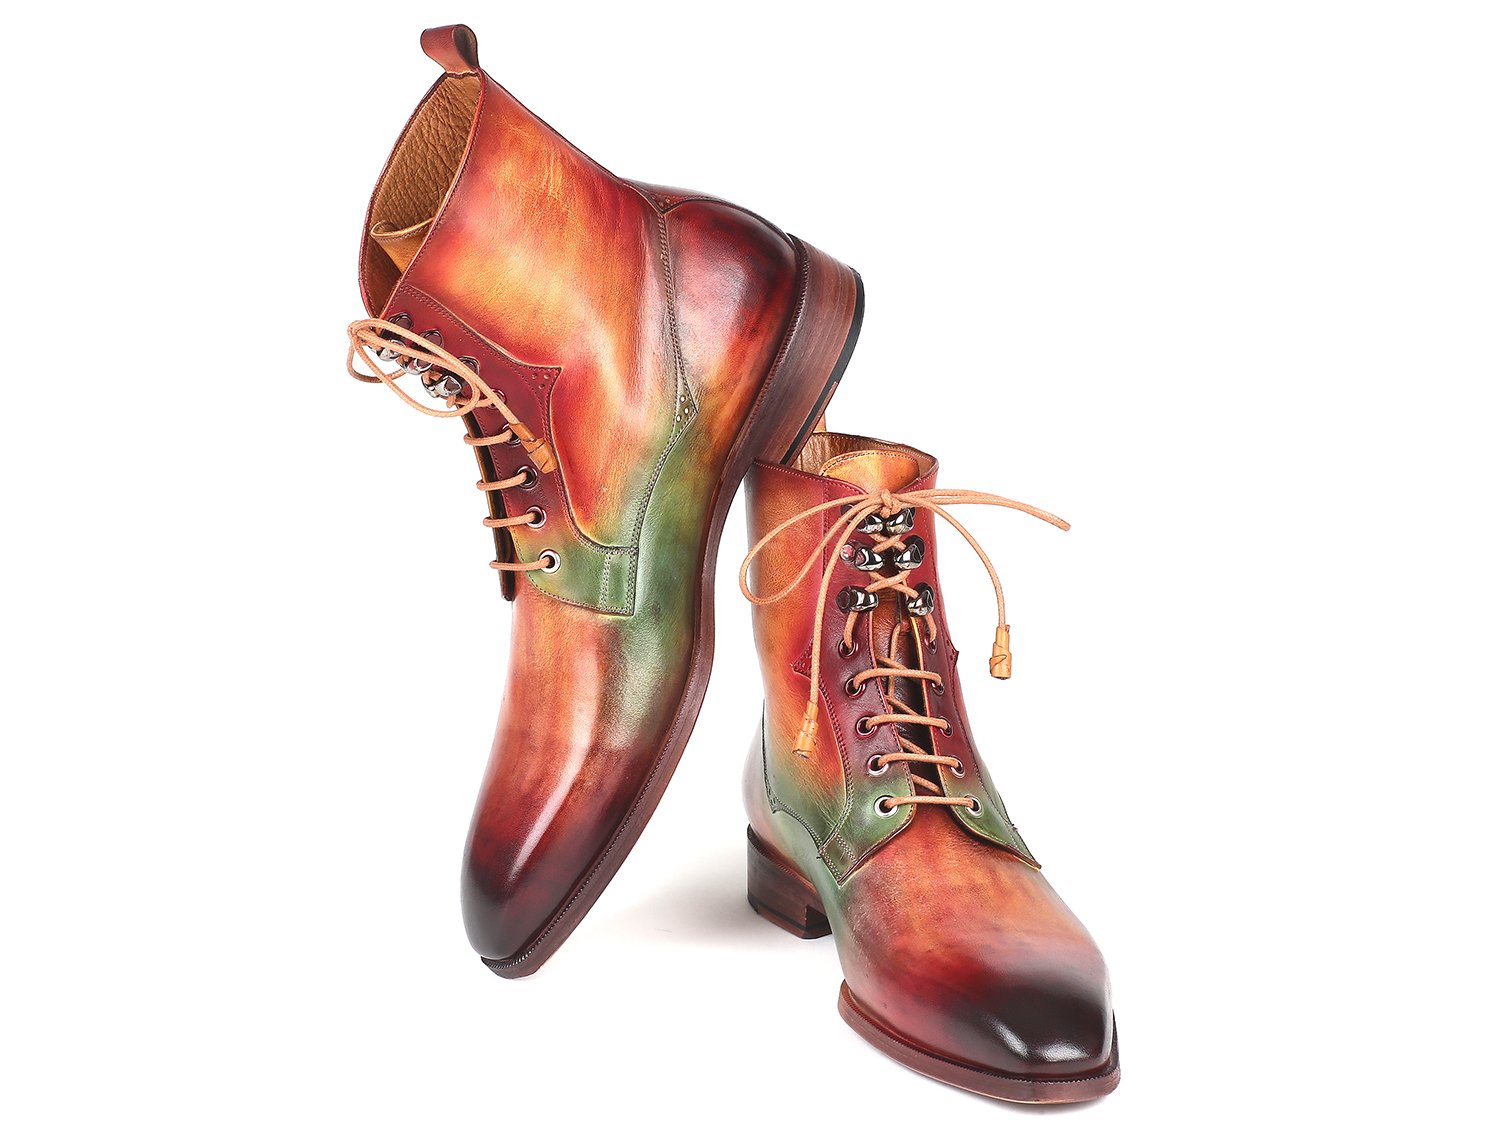 Paul Parkman Green Camel & Bordeaux Leather Boots - BT533SPR